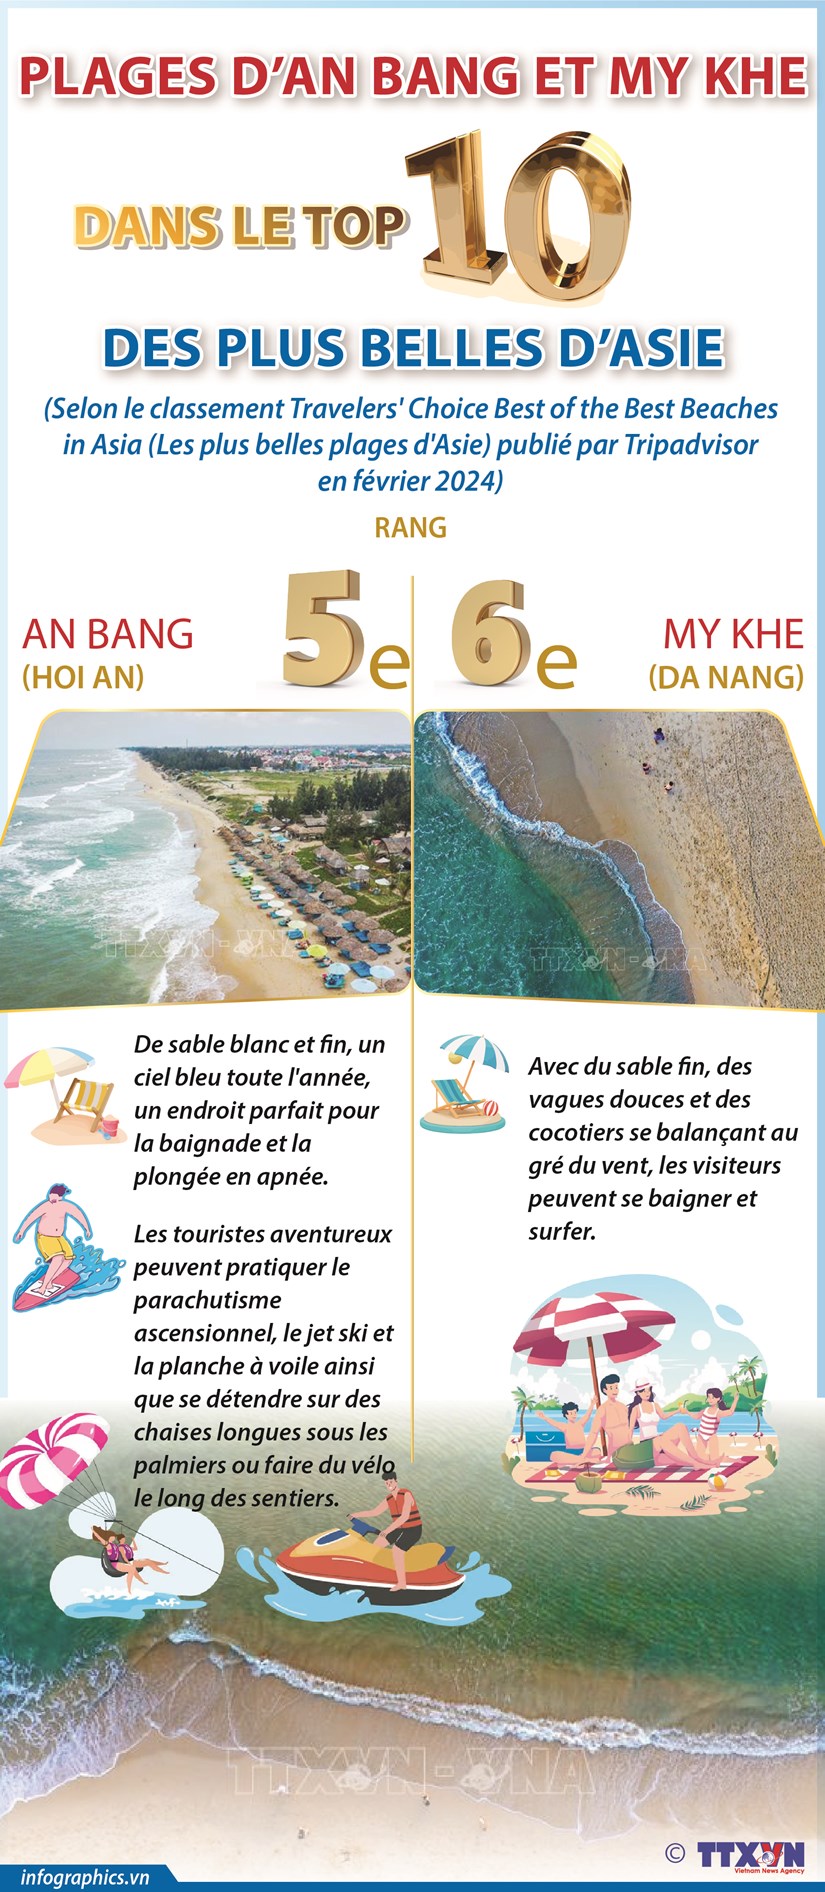 Les plages de Hoi An et Da Nang figurent dans le top 10 des plus belles plages d'Asie hinh anh 1